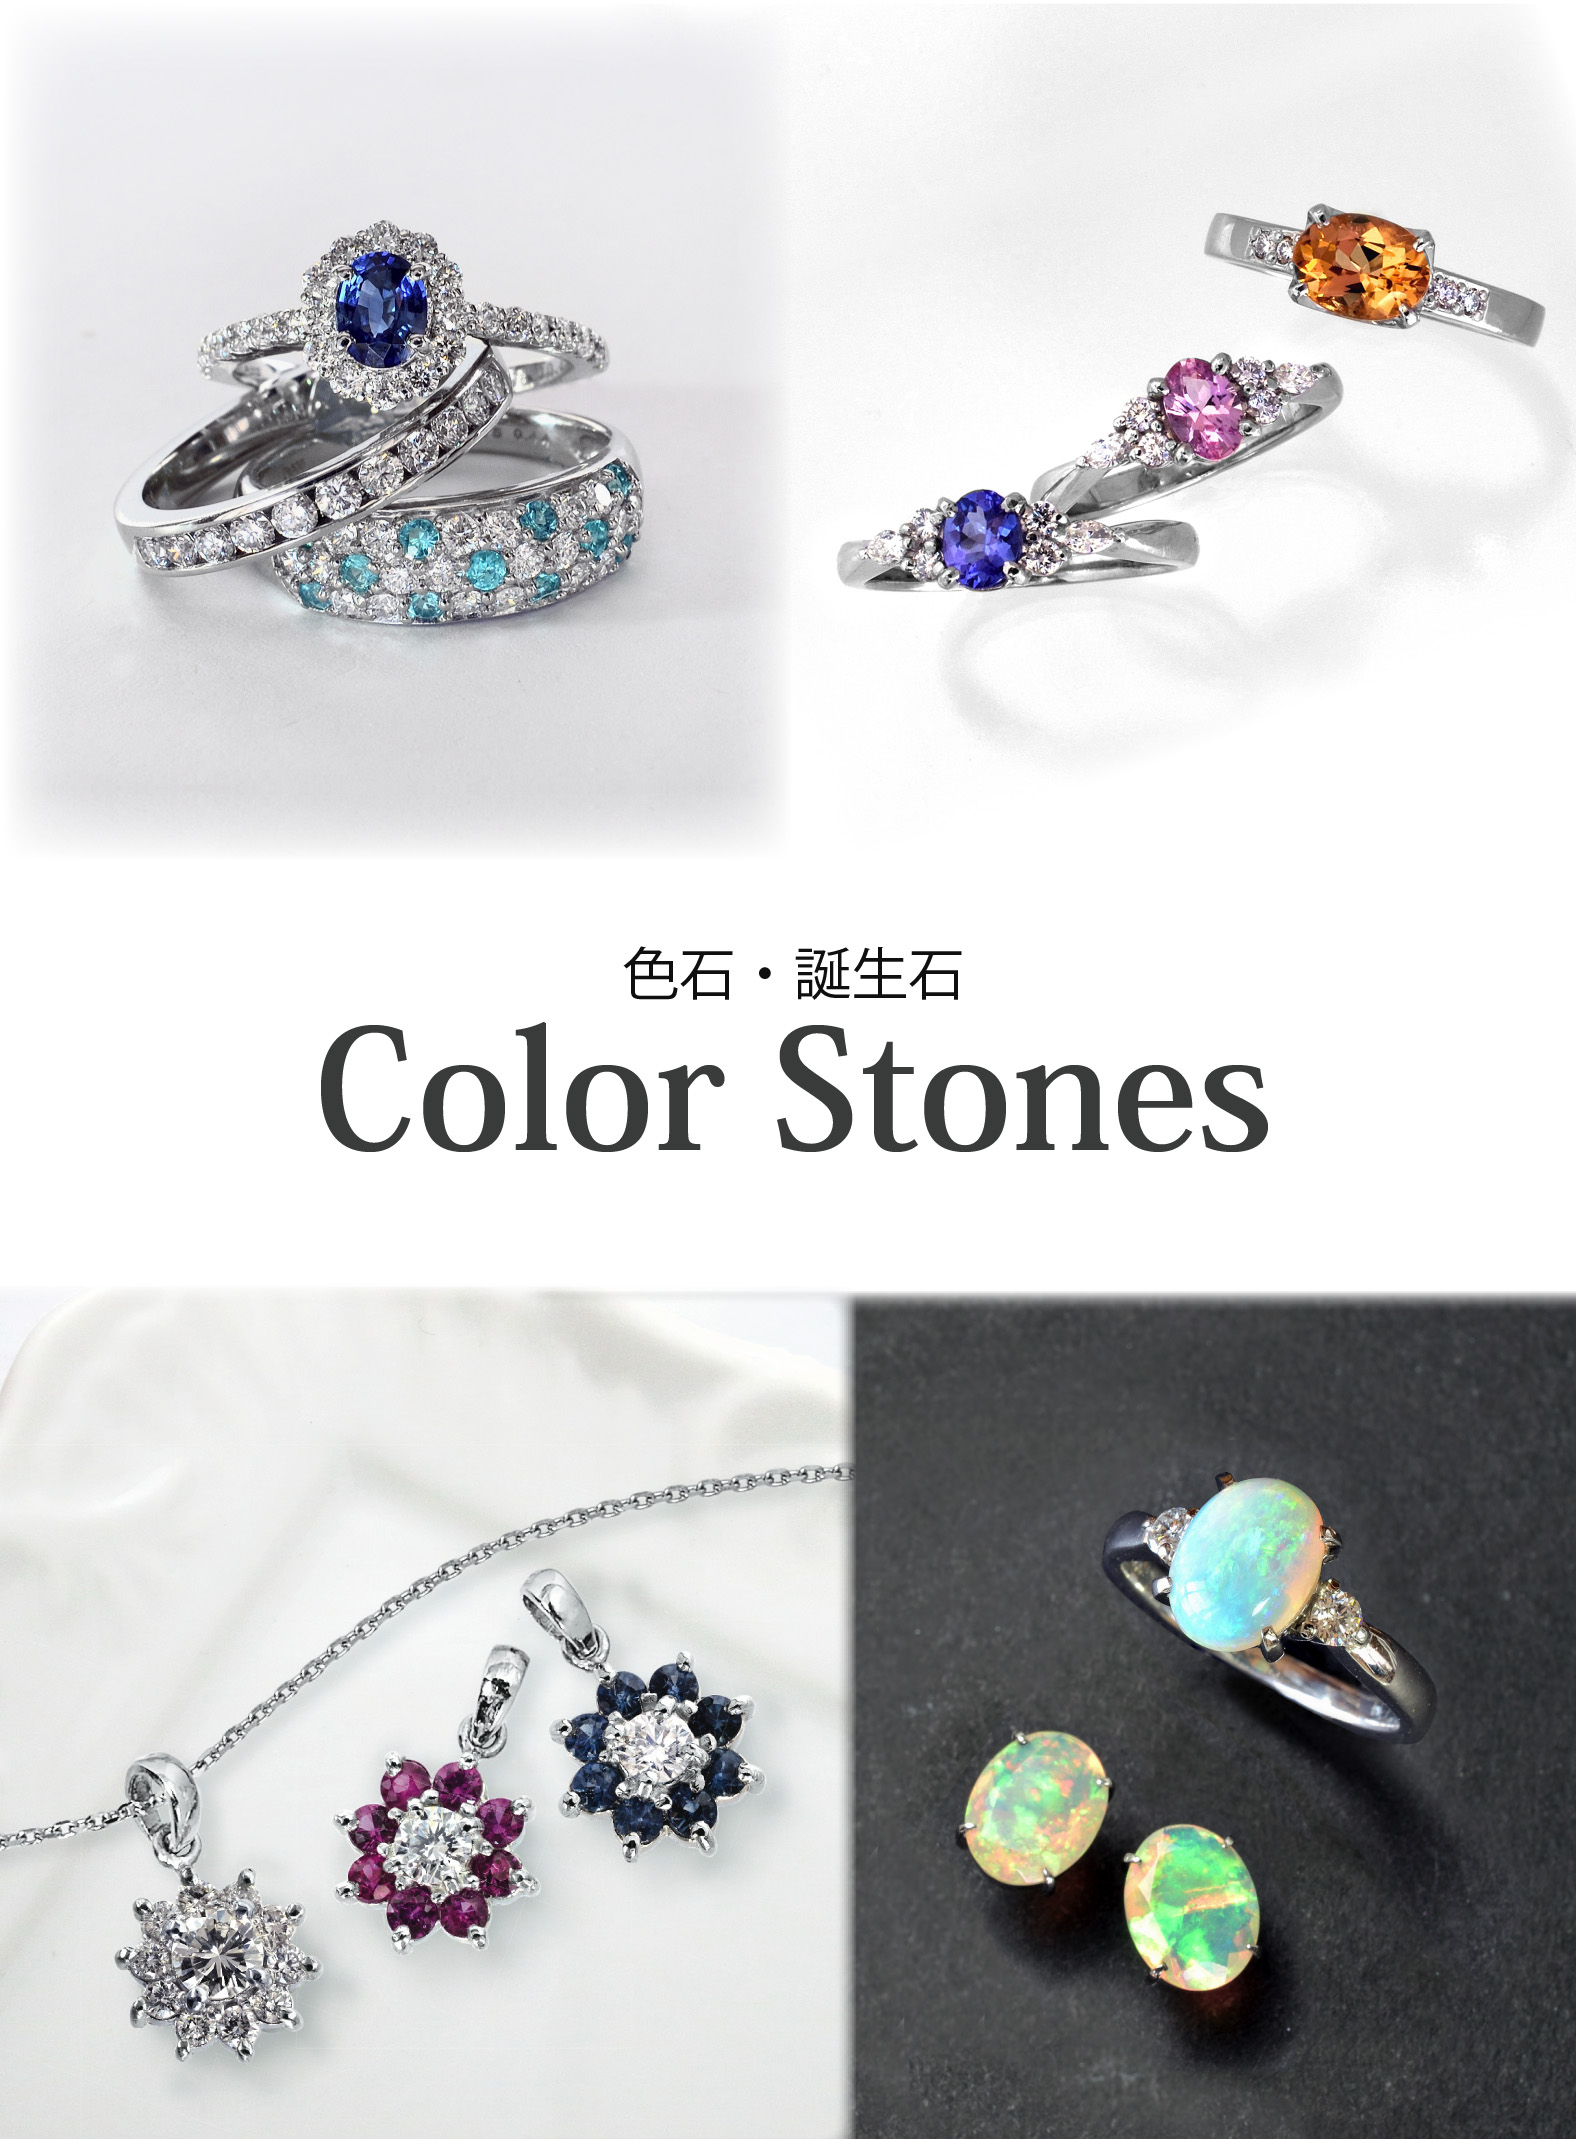 Color Stone